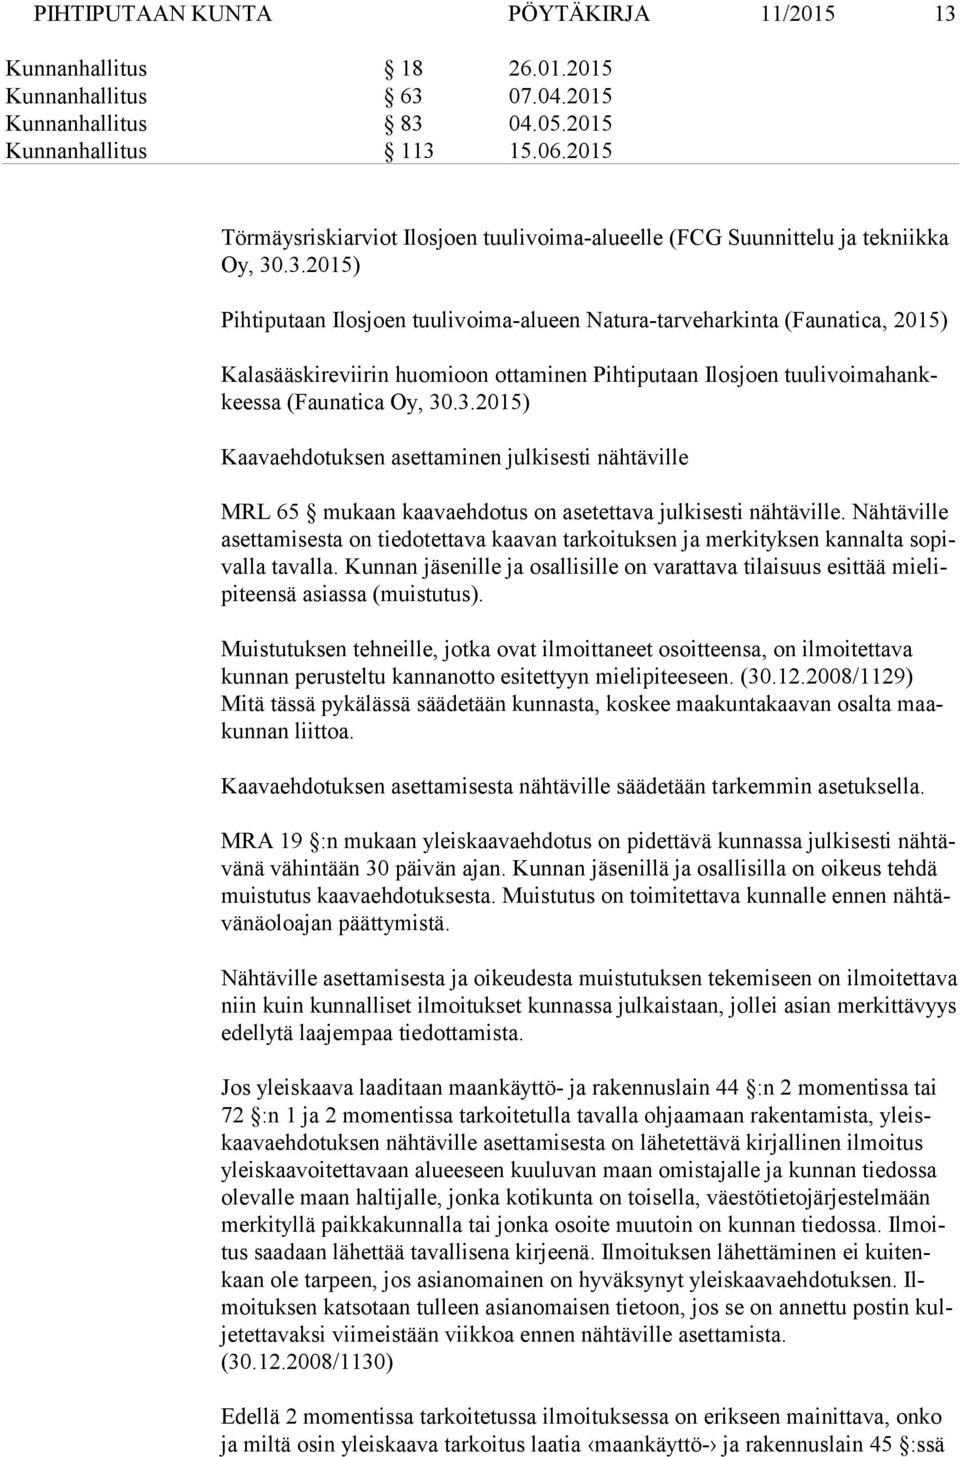 .3.2015) Pihtiputaan Ilosjoen tuulivoima-alueen Natura-tarveharkinta (Faunatica, 2015) Kalasääskireviirin huomioon ottaminen Pihtiputaan Ilosjoen tuu li voi ma hankkees sa (Faunatica Oy, 30.3.2015) Kaavaehdotuksen asettaminen julkisesti nähtäville MRL 65 mukaan kaavaehdotus on asetettava julkisesti nähtäville.